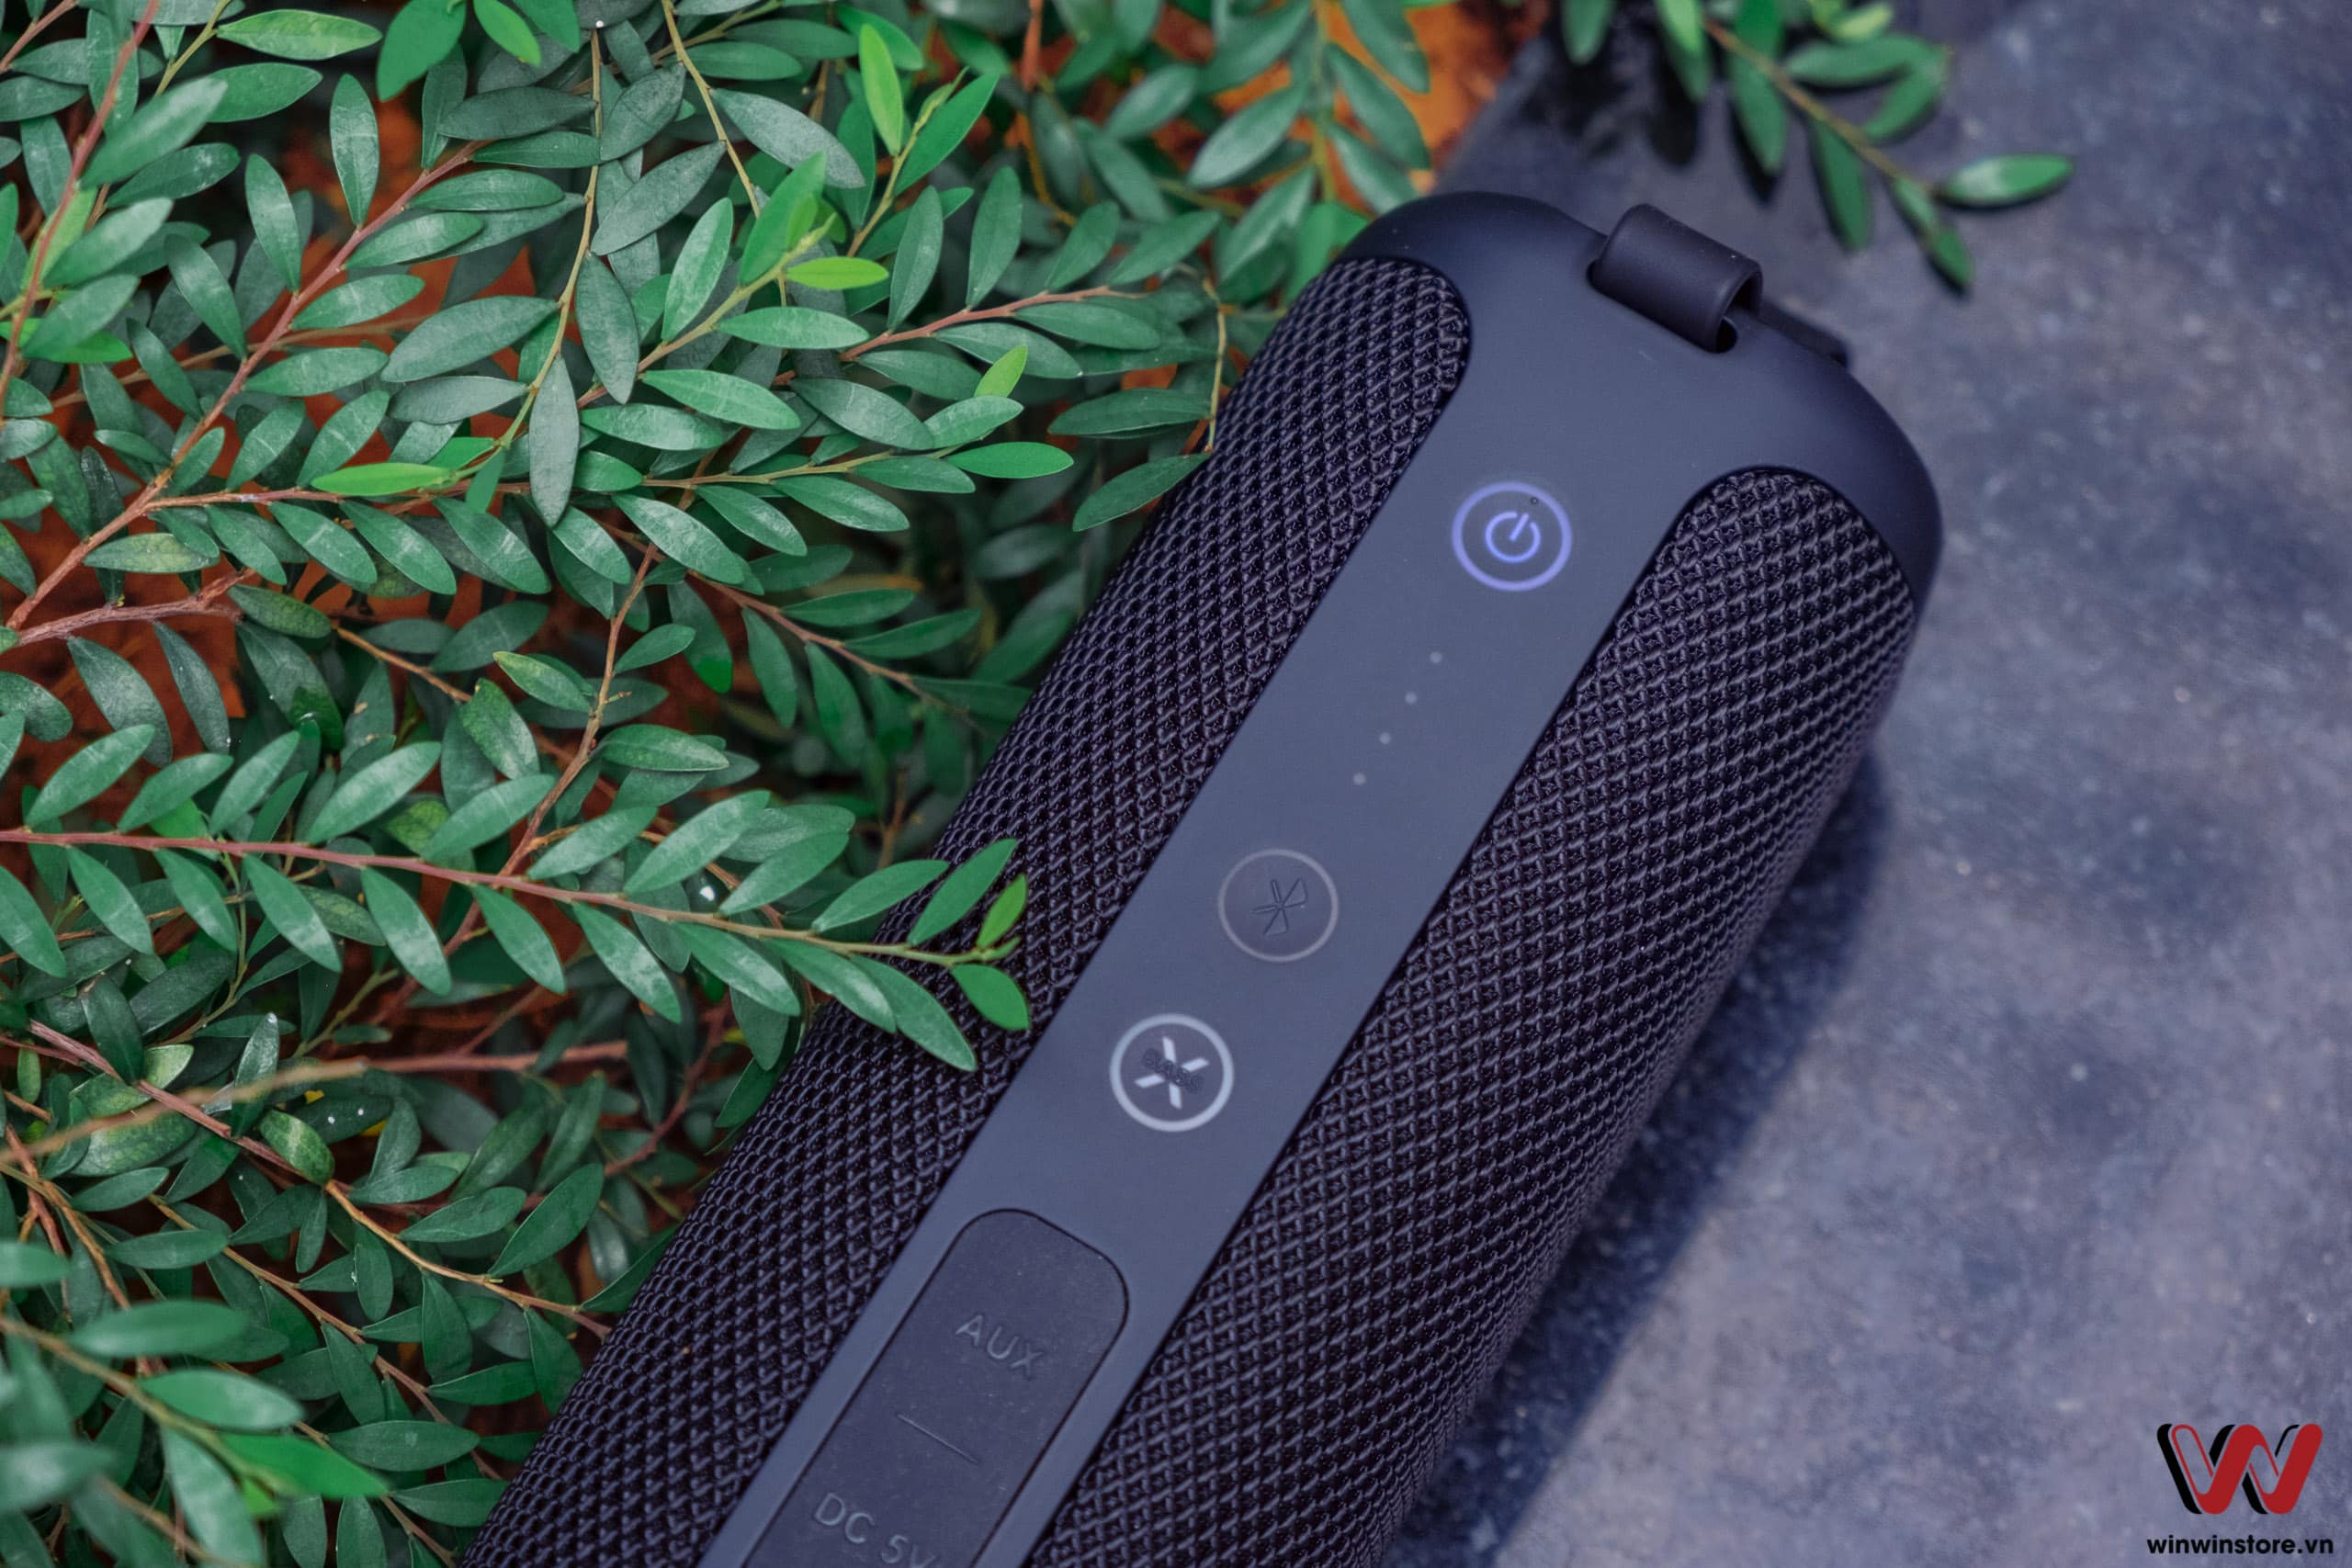 Trên tay loa Bluetooth Tribit Stormbox: Chất âm hay, bass cực bay, có khả năng chống nước với mức giá dễ chịu